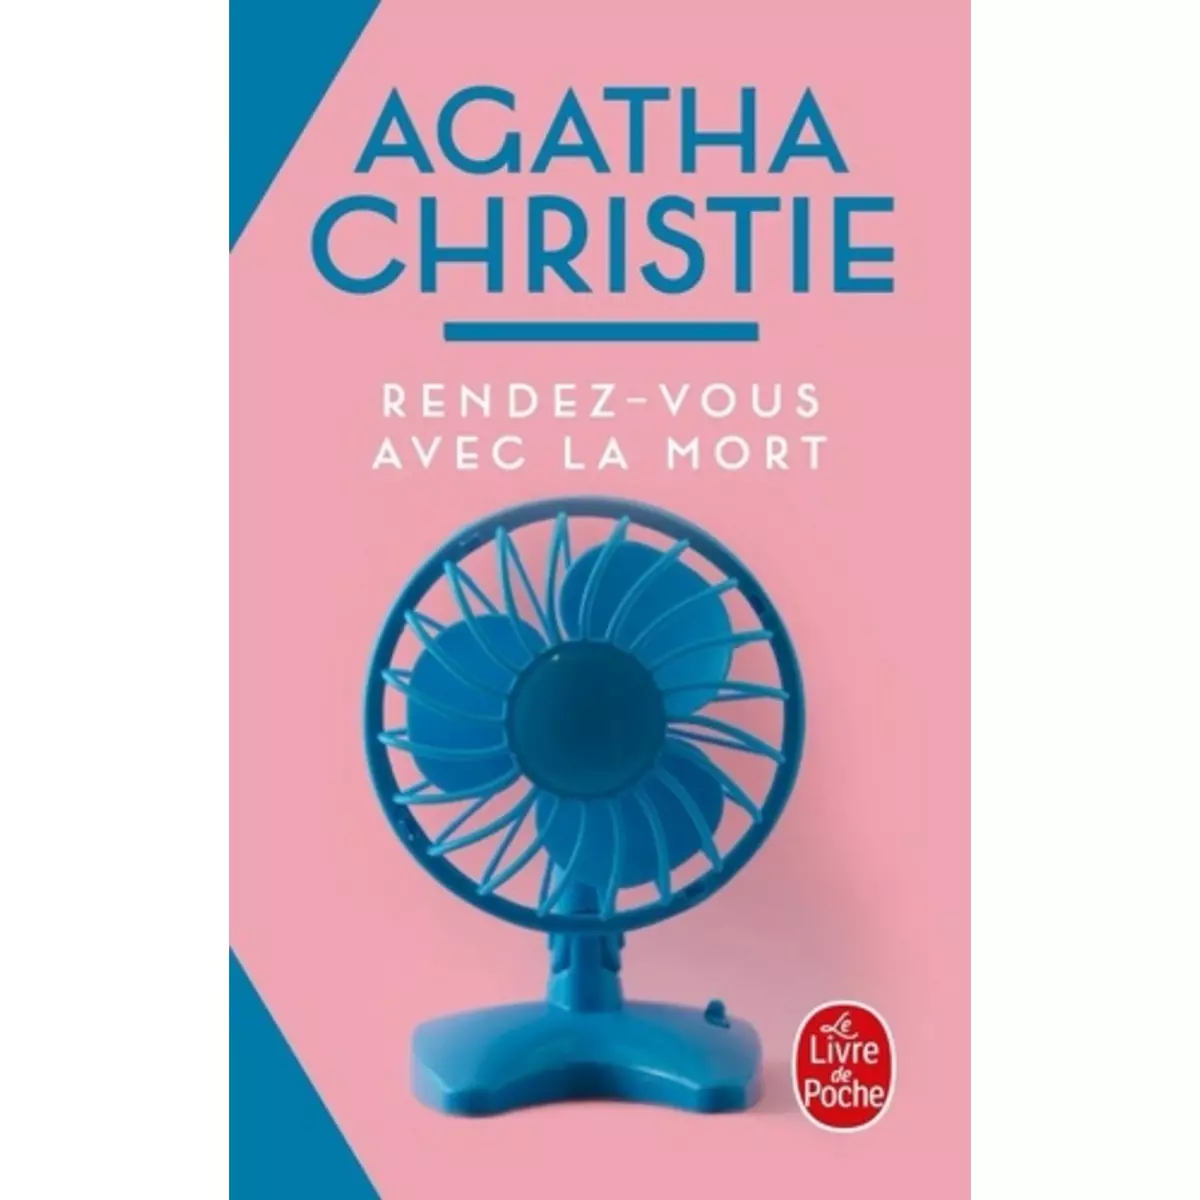  RENDEZ-VOUS AVEC LA MORT, Christie Agatha